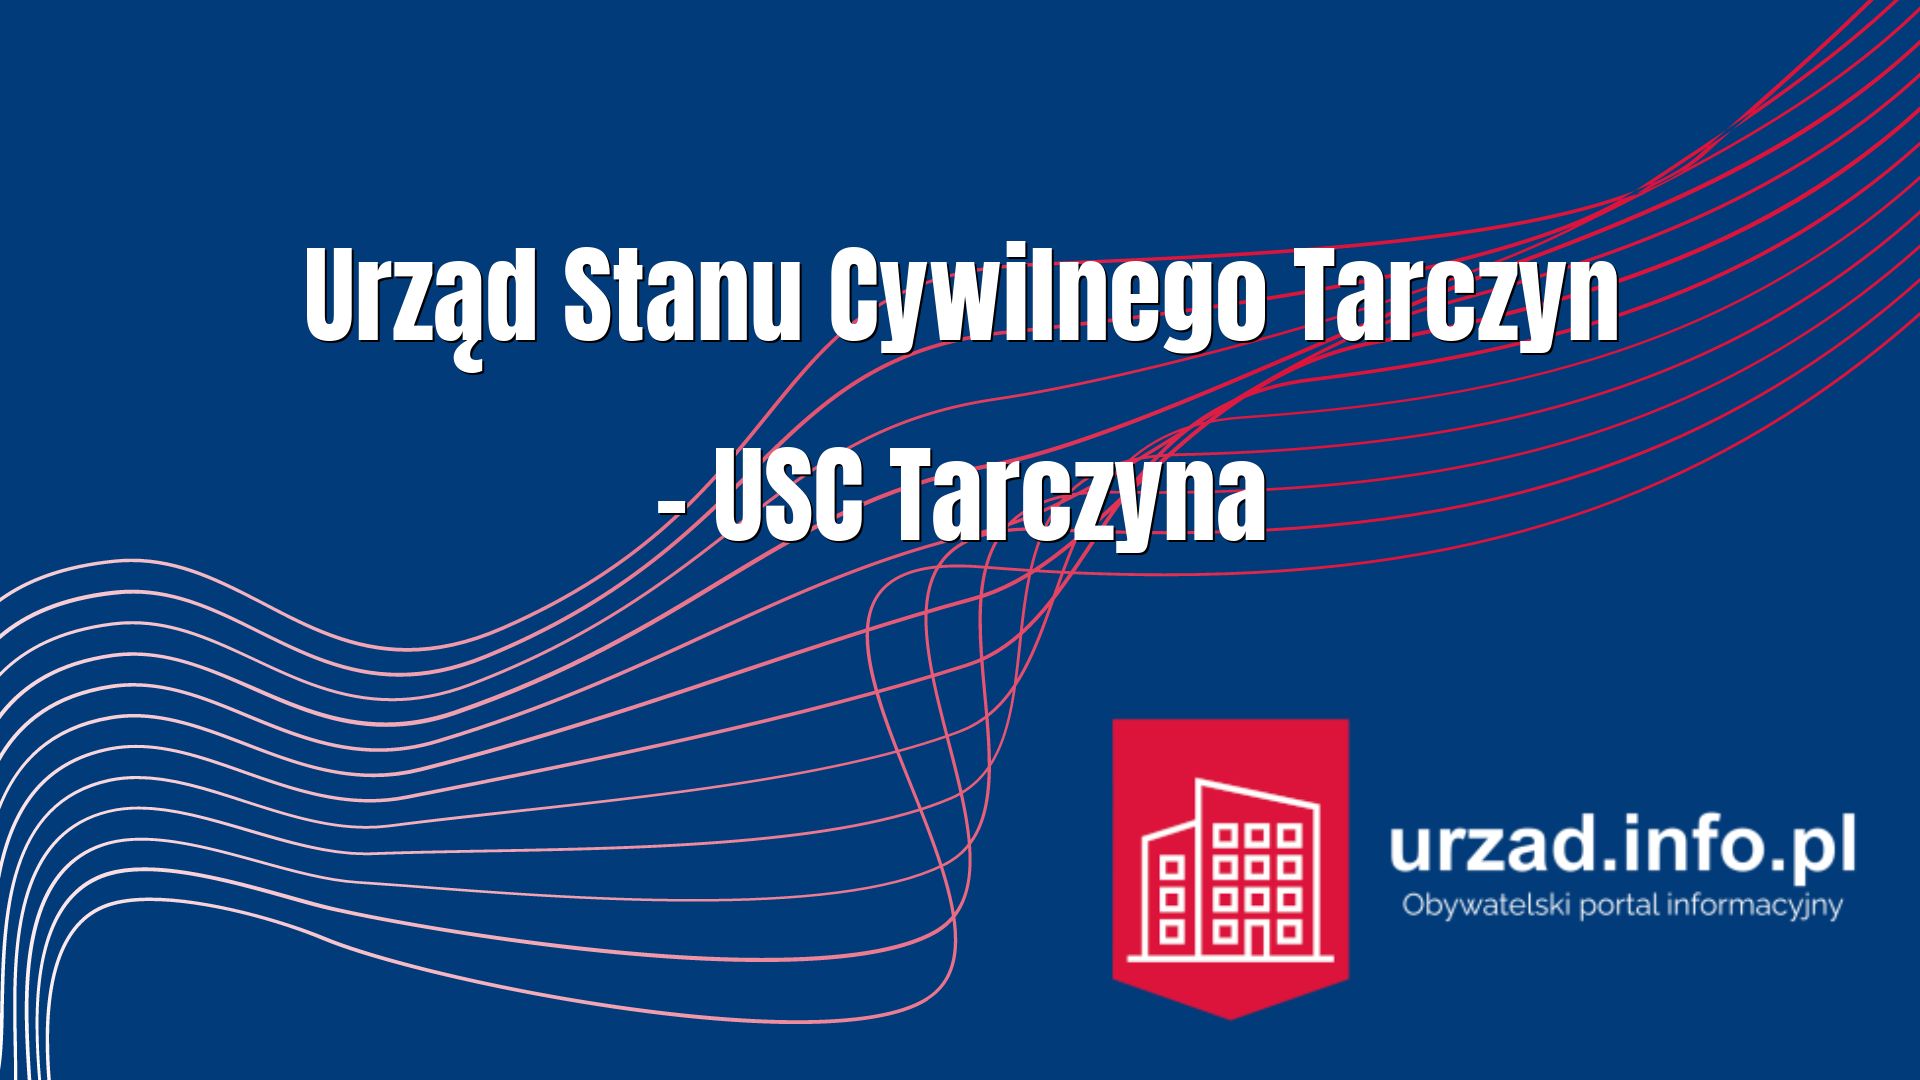 Urząd Stanu Cywilnego Tarczyn – USC Tarczyna